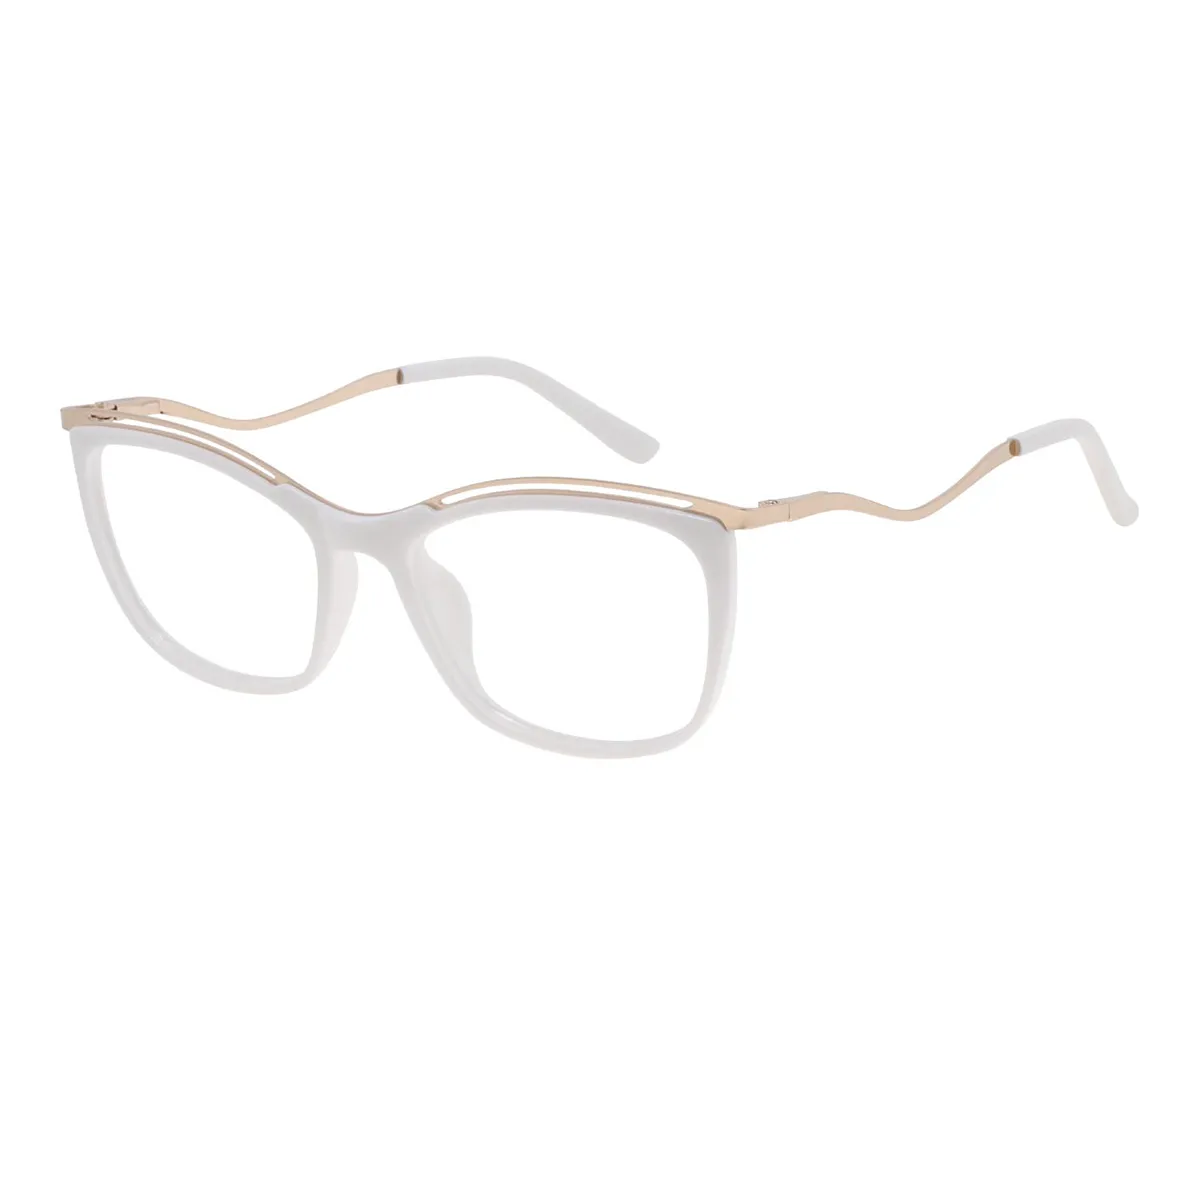 Kimberley - Square White Glasses for Women